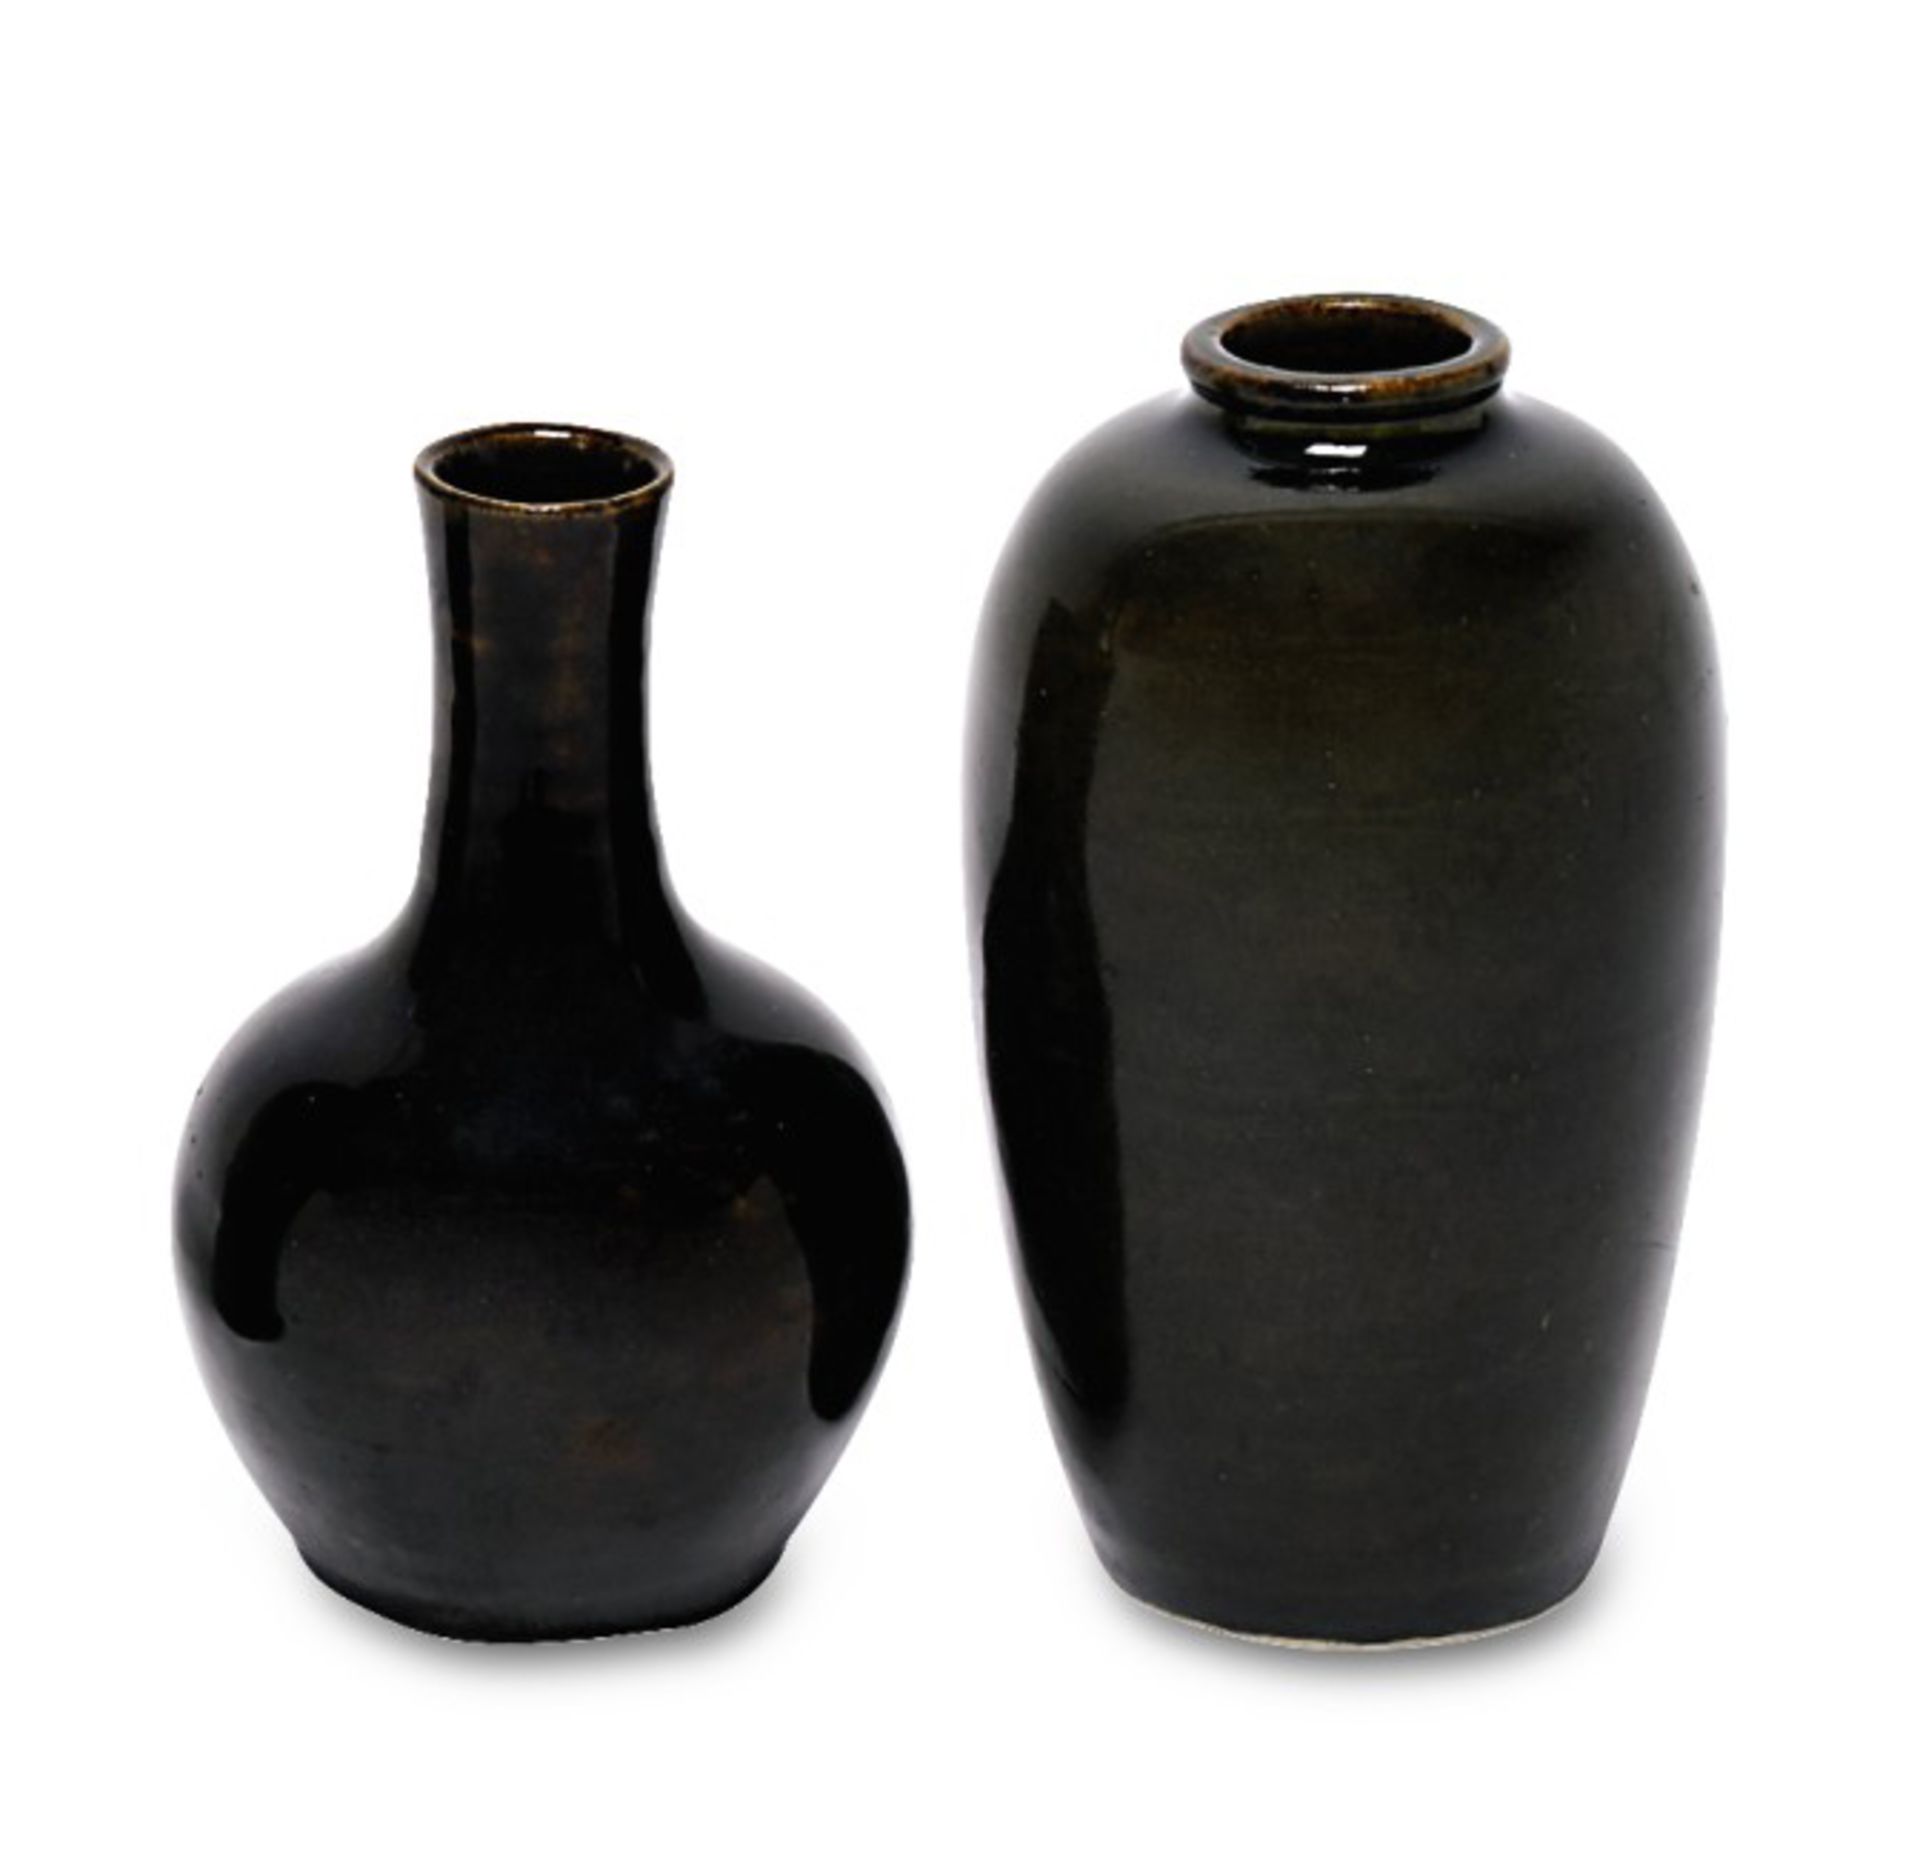 Zwei VasenChina, Ende 18./frühes 19. Jh.Steinzeug. Meiping-Form mit grünlich-brauner Glasur bzw.